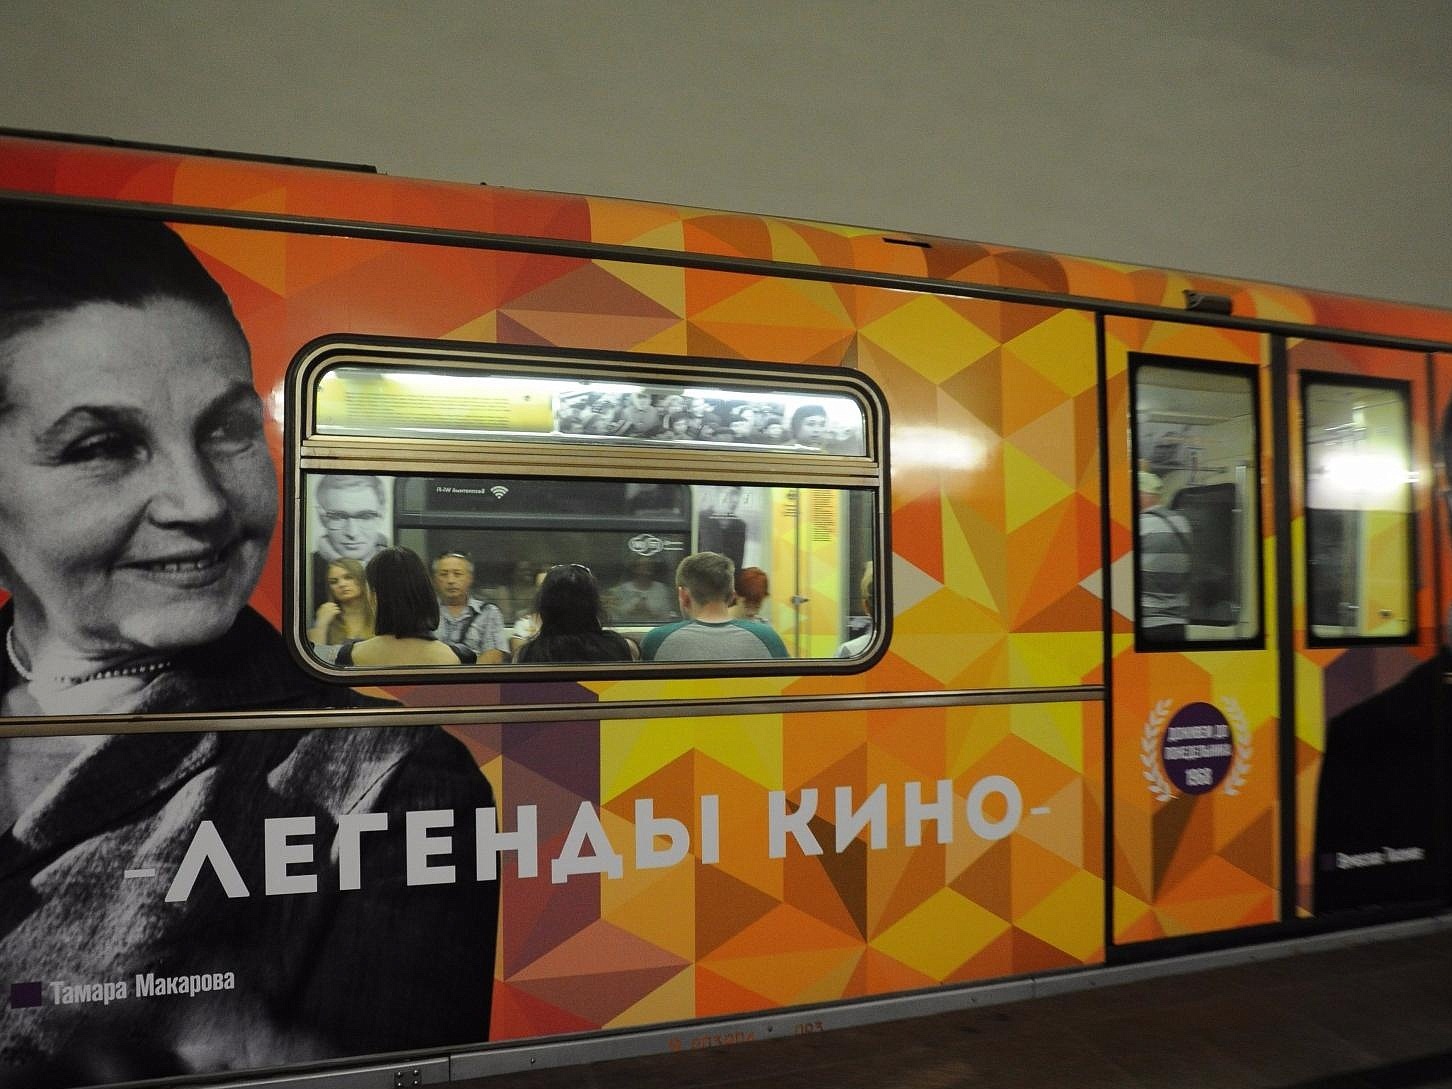 Поезд "Легенды кино" начал курсировать по кольцевой линии московского метро